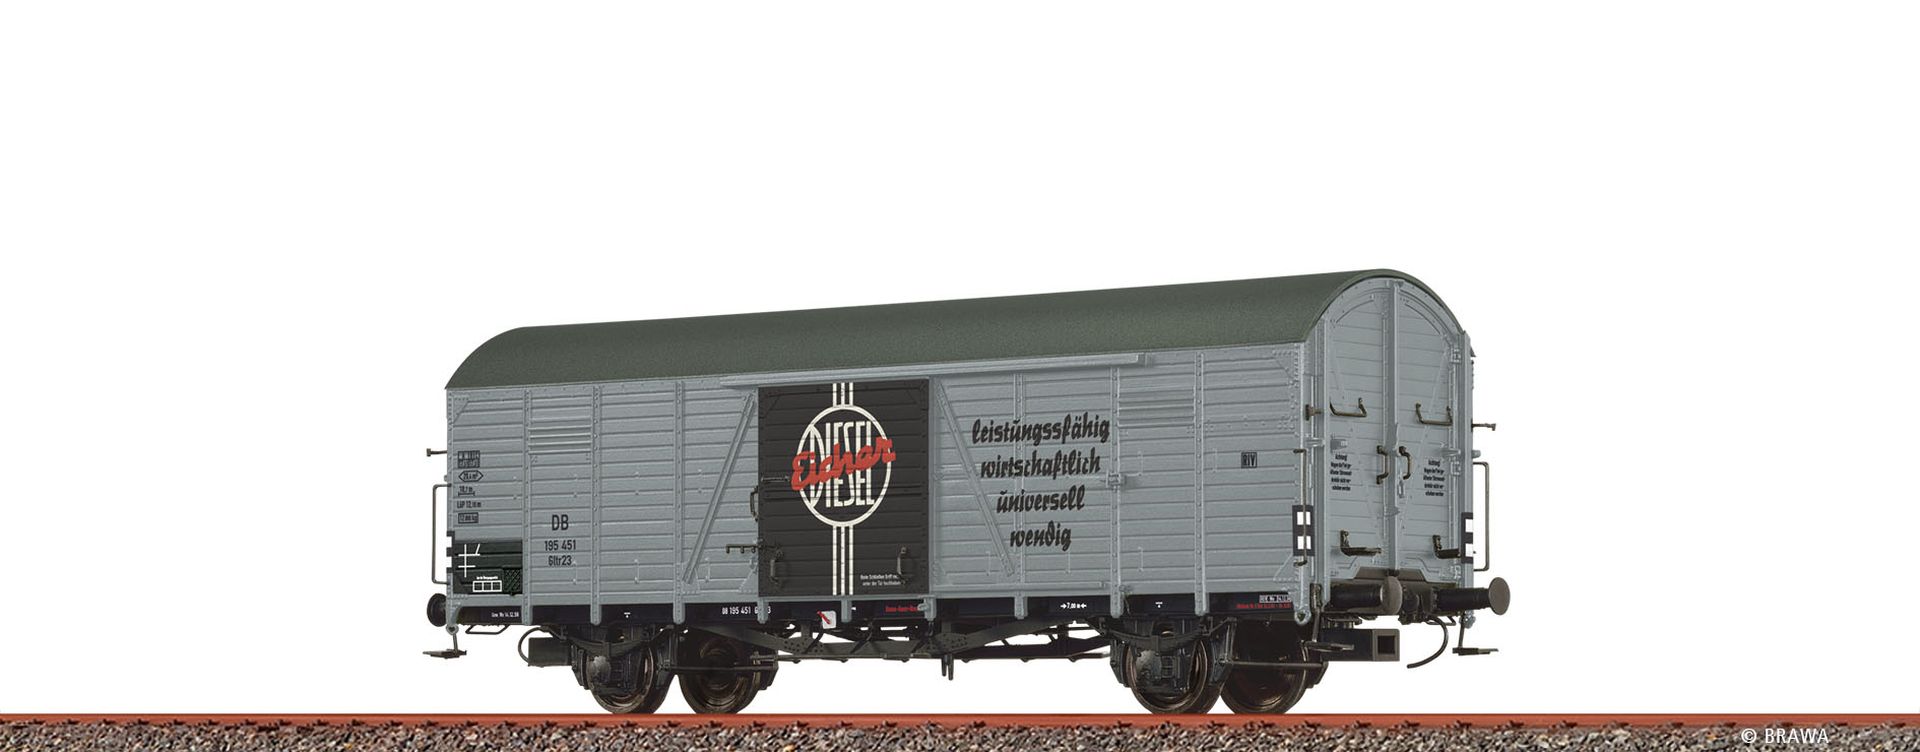 Brawa 50485 - Gedeckter Güterwagen Glr 23 'Eicher', DB, Ep.III